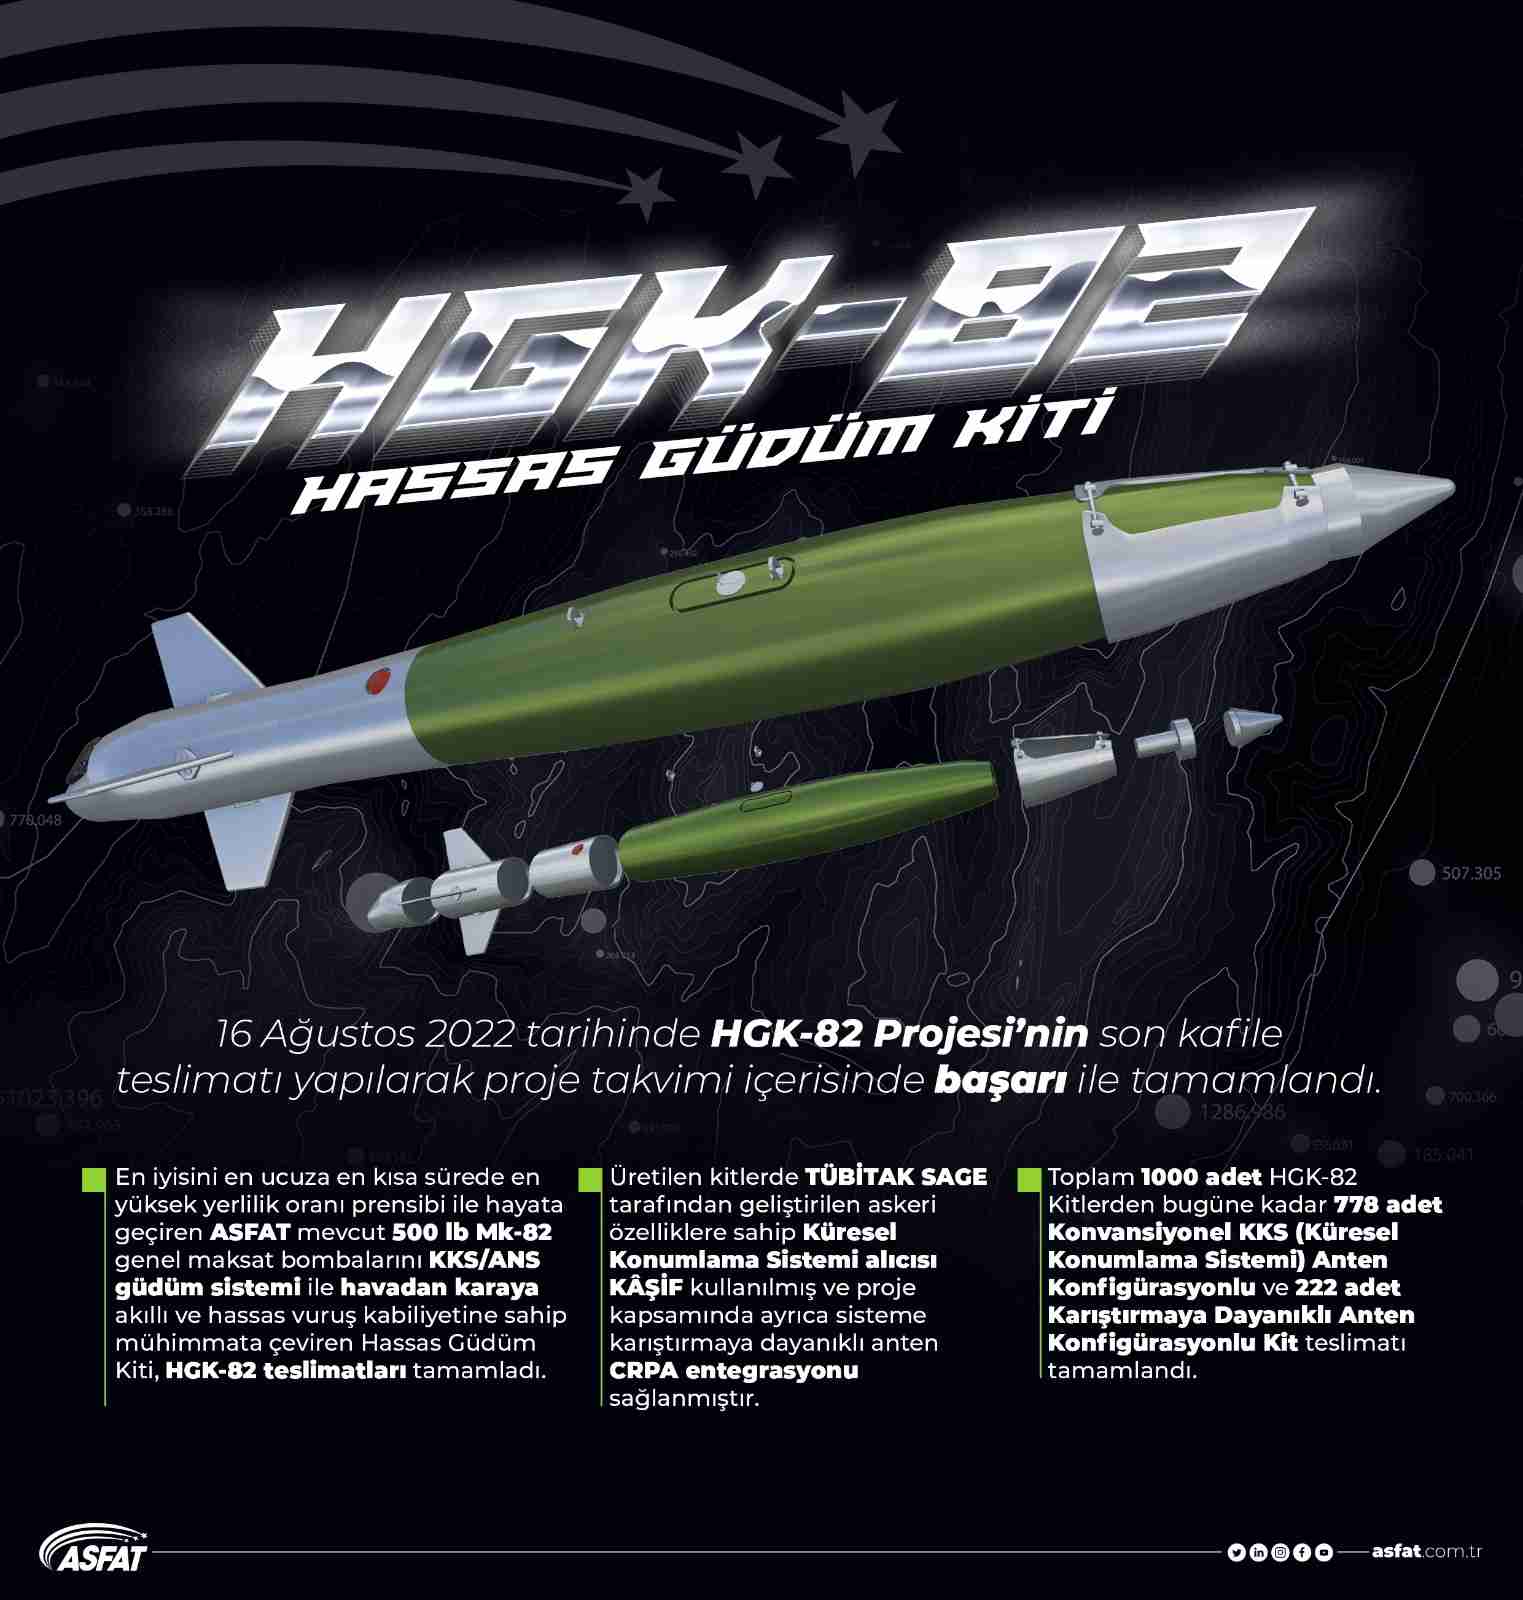 MSB, 1000 adet HGK-82’nin teslim alındığını bildirdi